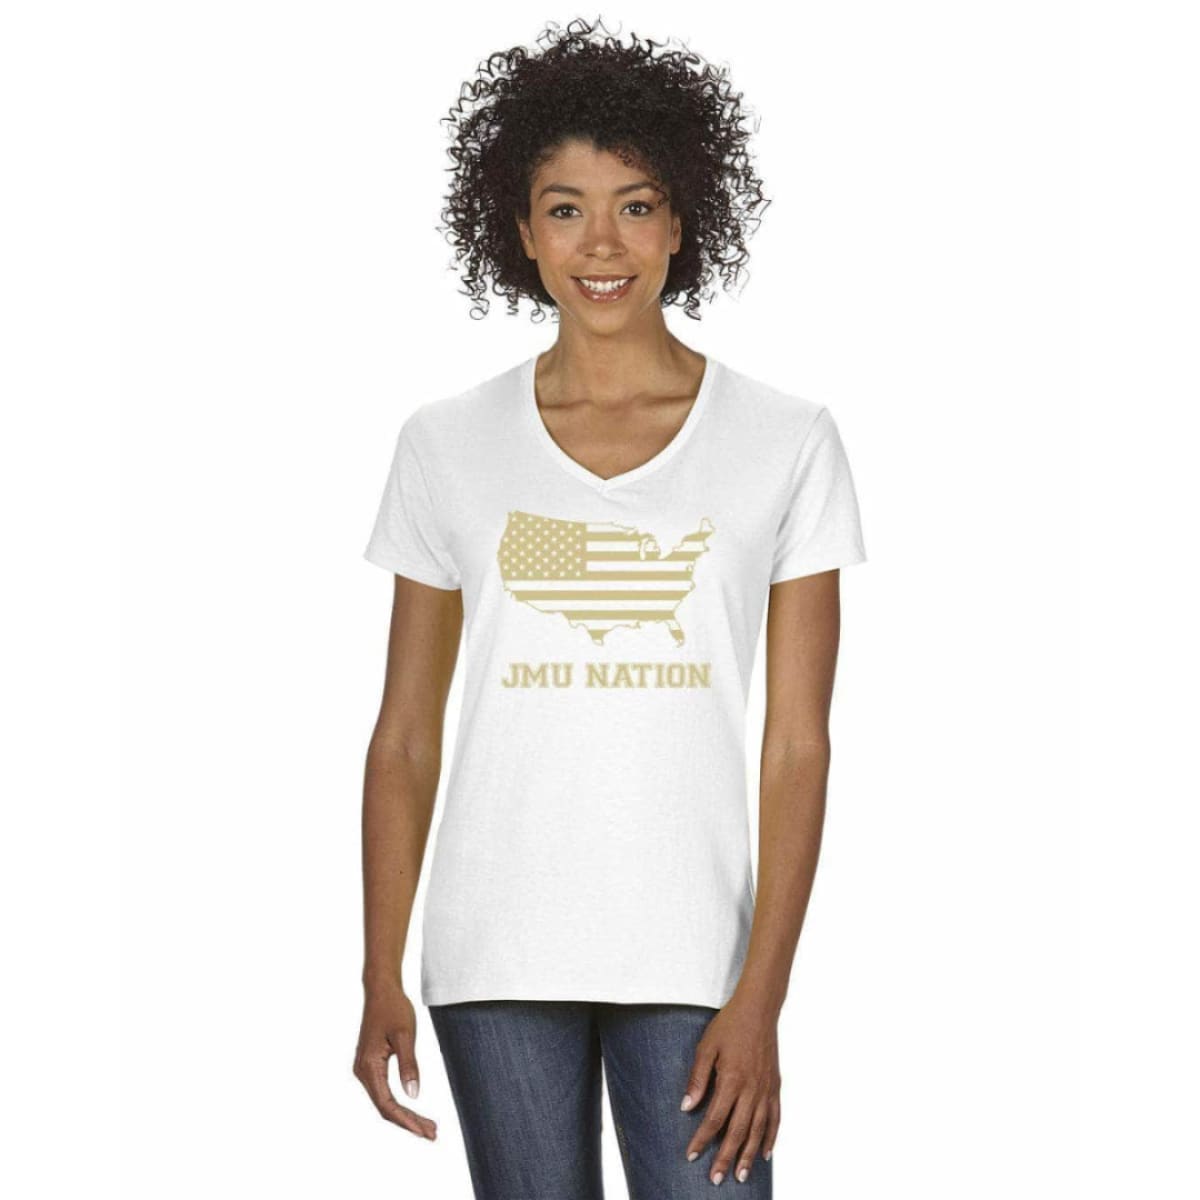 Women’s V-Neck Short Sleeve T-Shirt - S / White w/Gold Logo